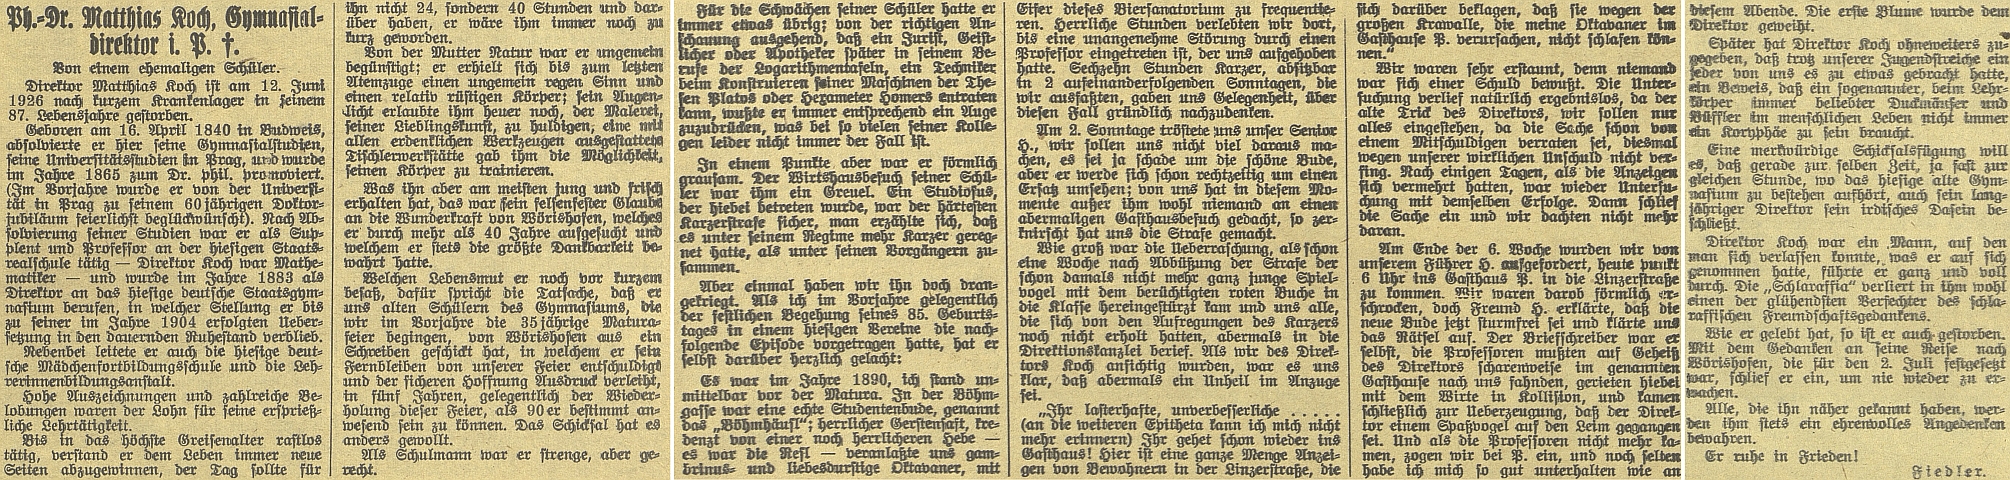 Originál nekrologu v českobudějovickém německém list